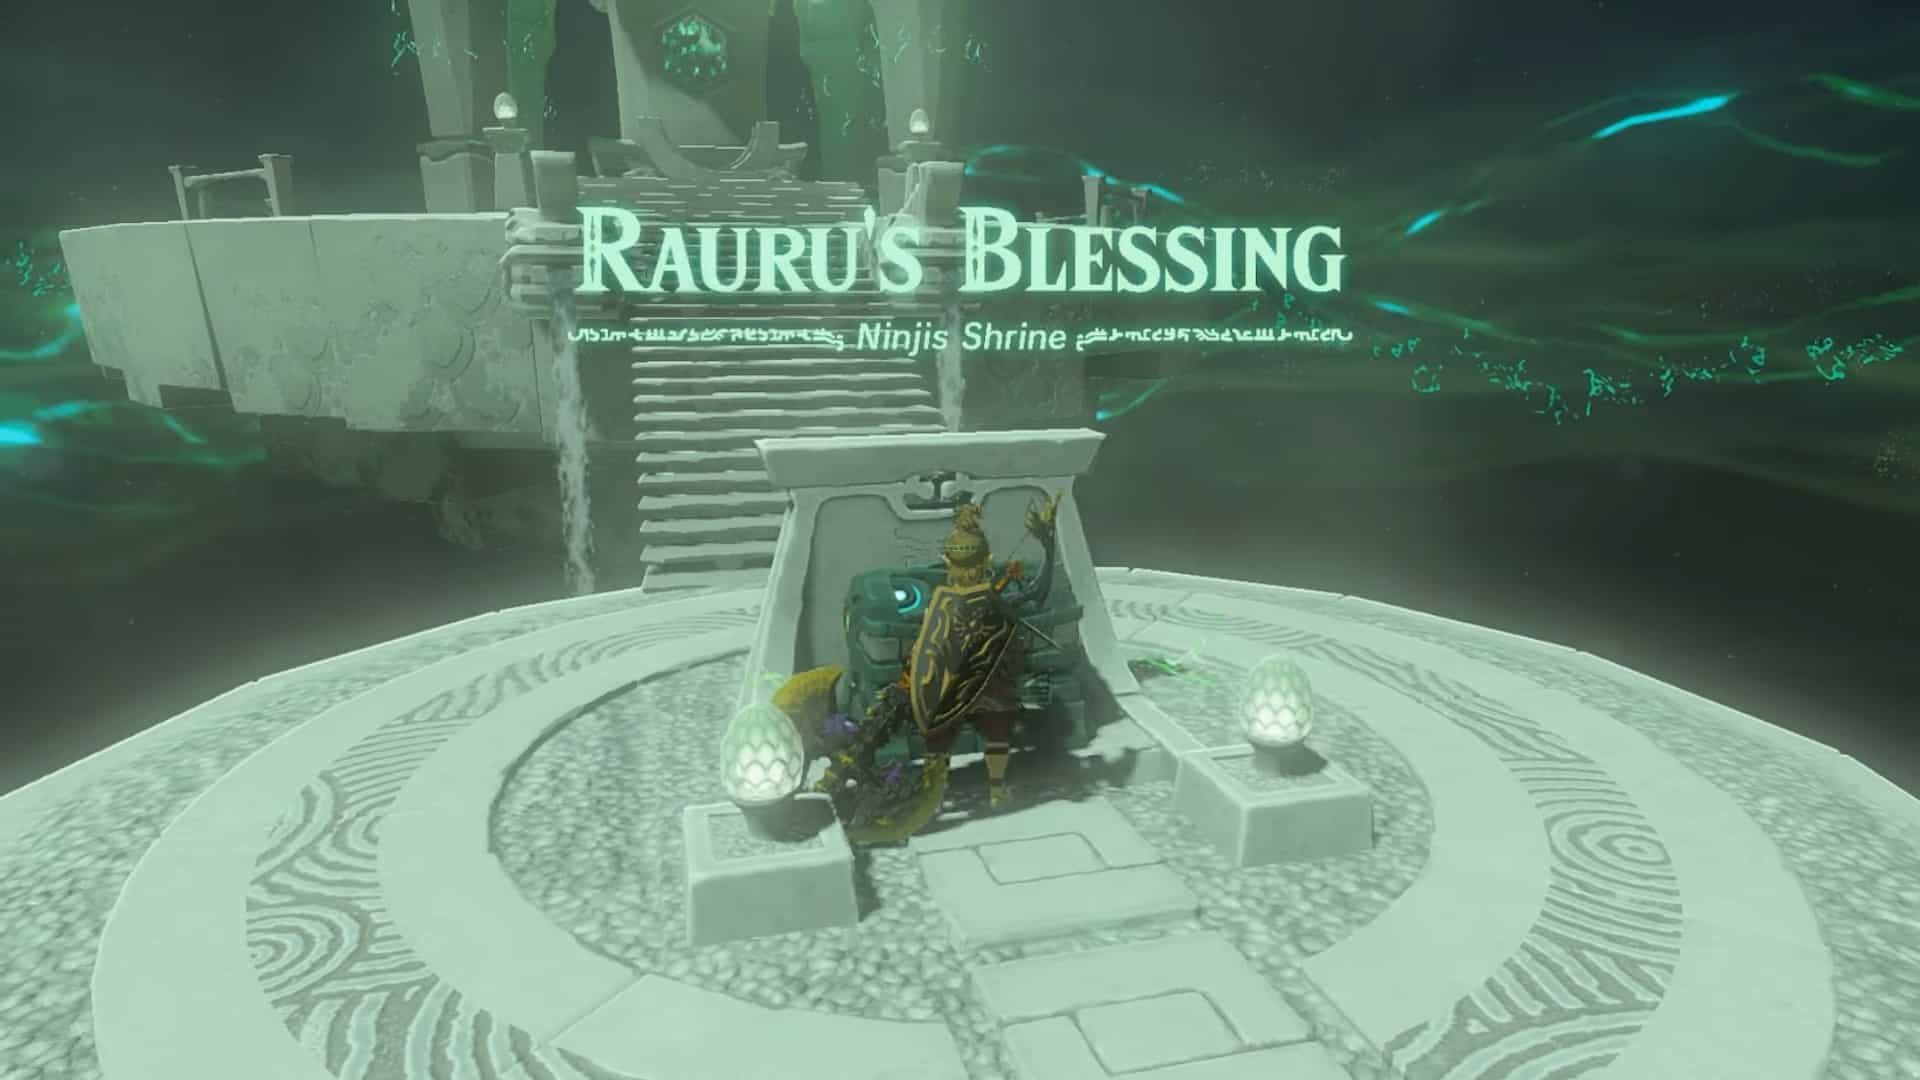 Ninjis shrine blessing